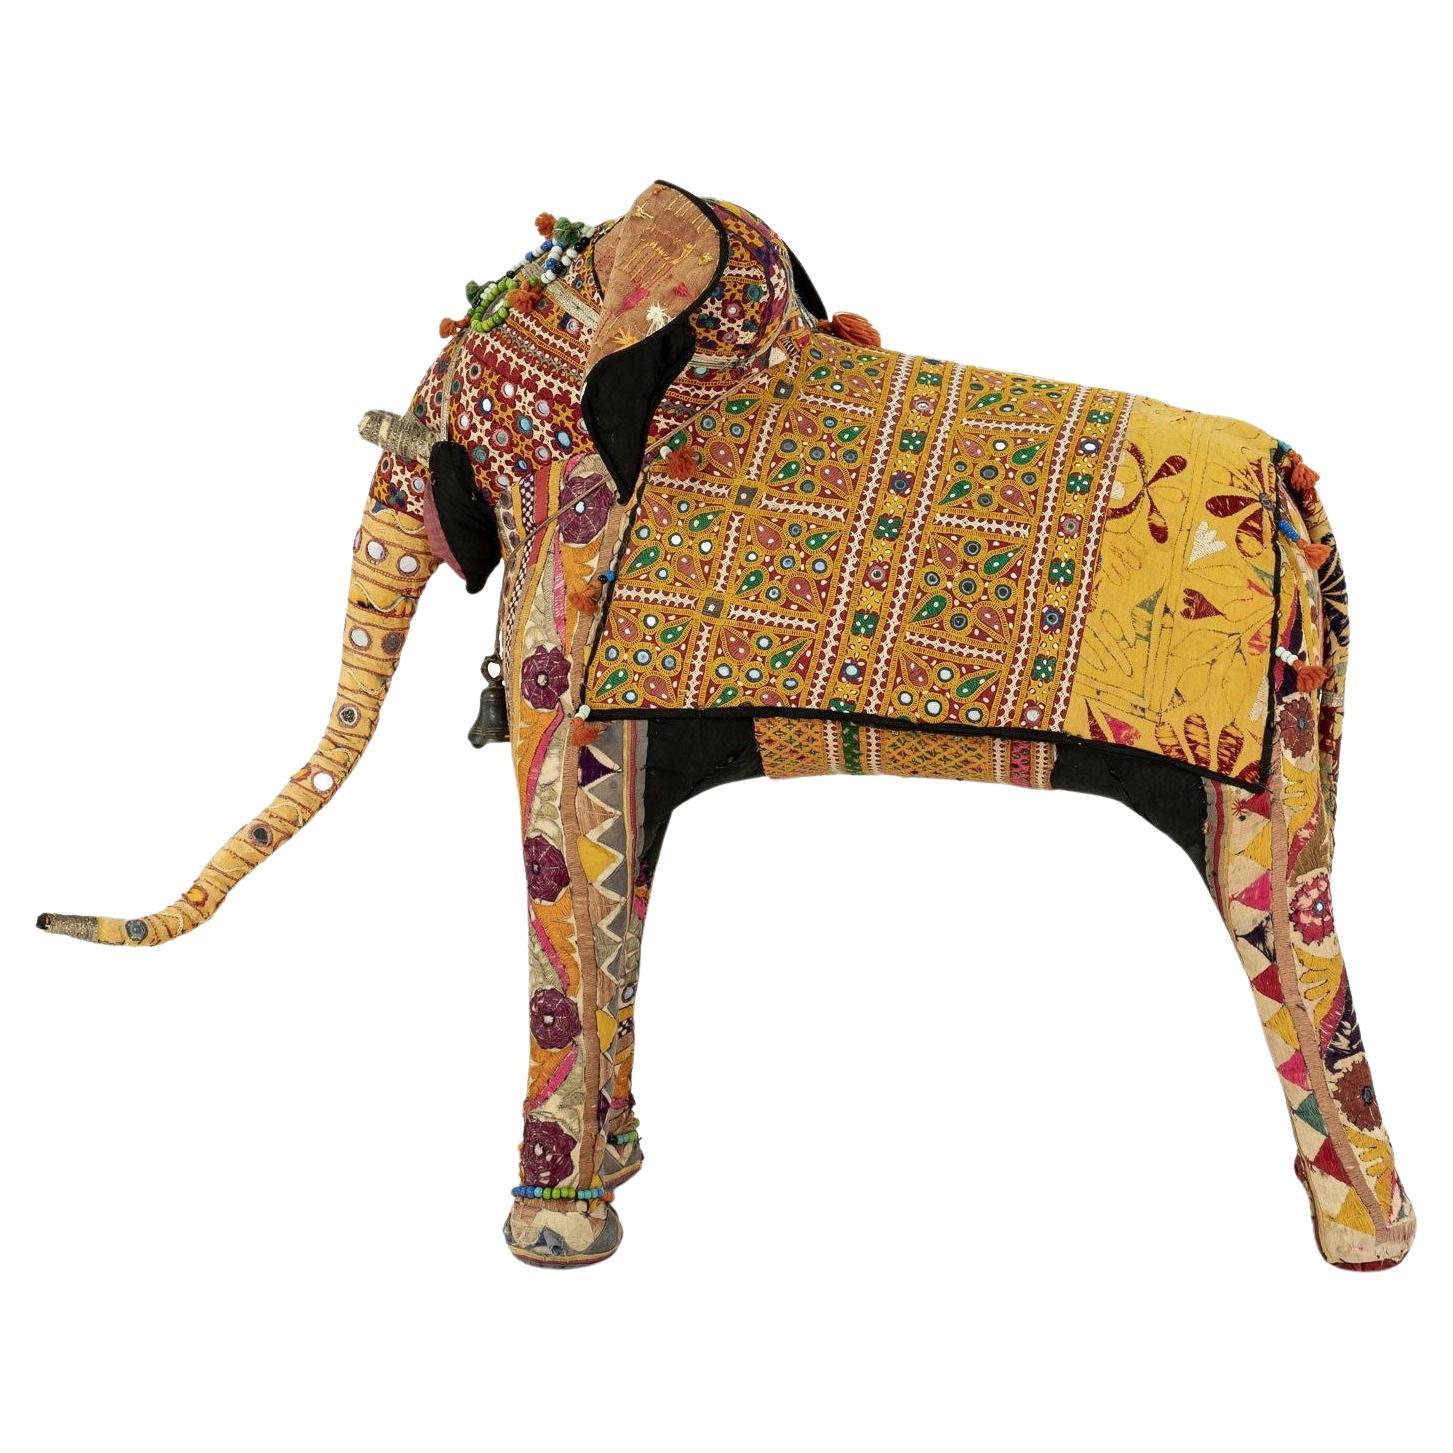 Massive éléphant vintage en coton recouvert de textiles indiens